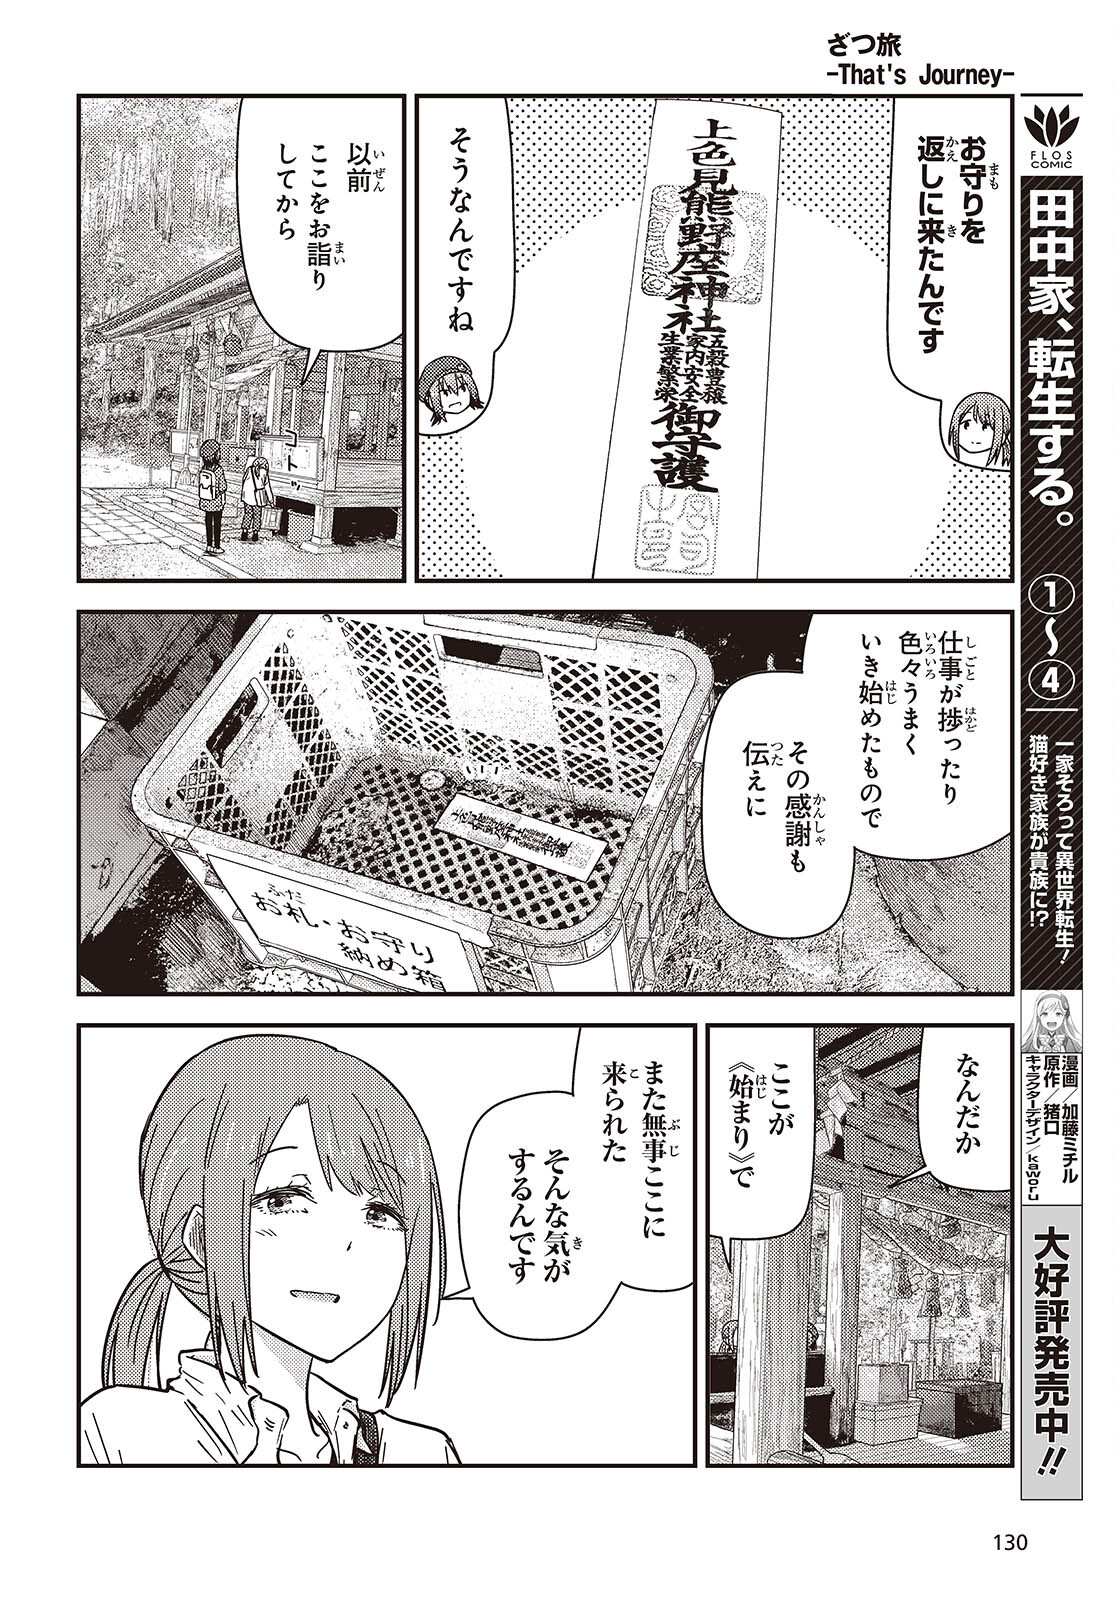 ざつ旅-That’s Journey- 第35話 - Page 20